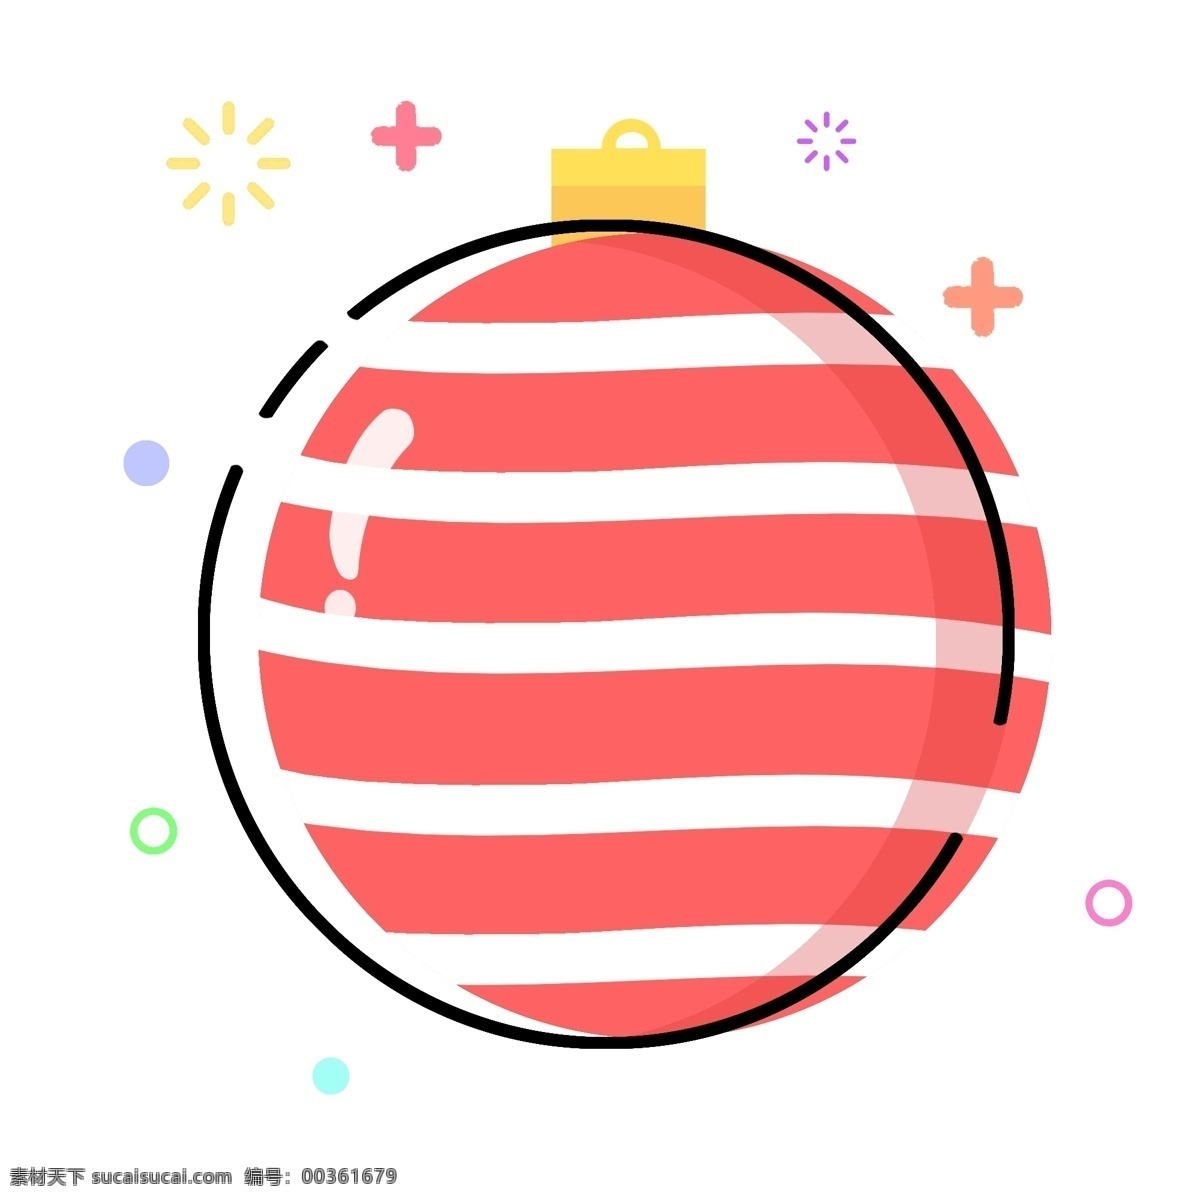 圣诞节 meb 可爱 极 简 扁平化 风格 圣诞 装饰 球 清新 极简 圣诞装饰球 mbe 彩球 挂